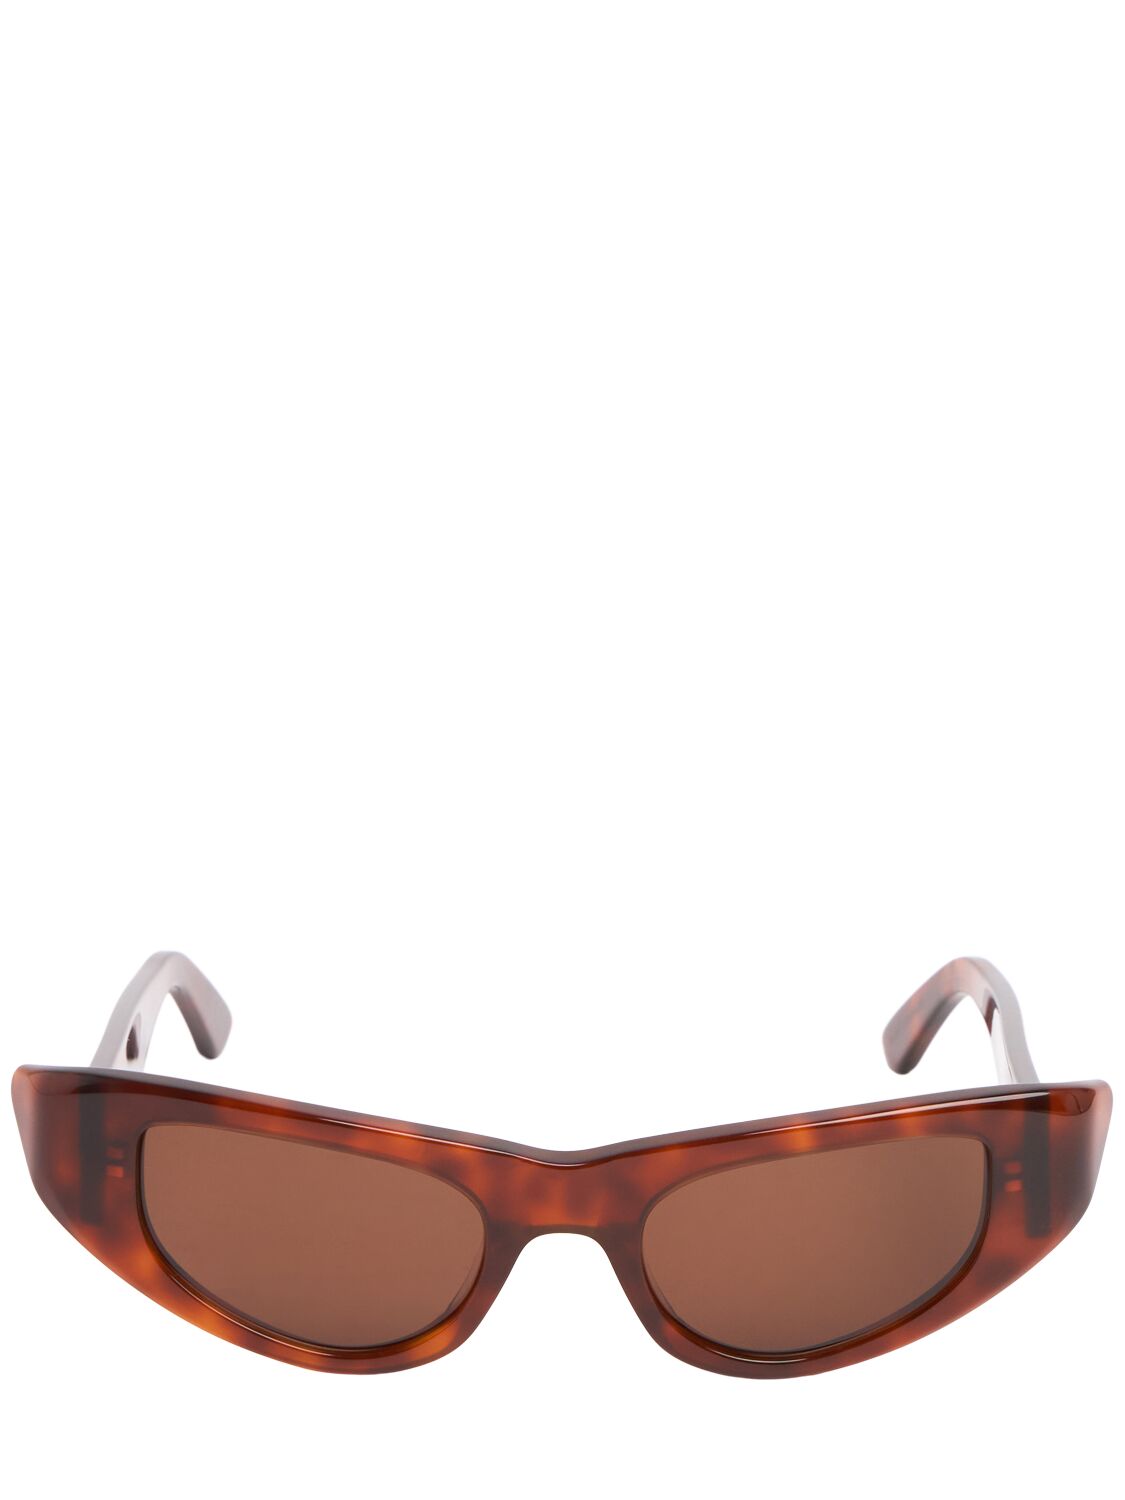 Image of Netherworld Cat-eye Sunglasses